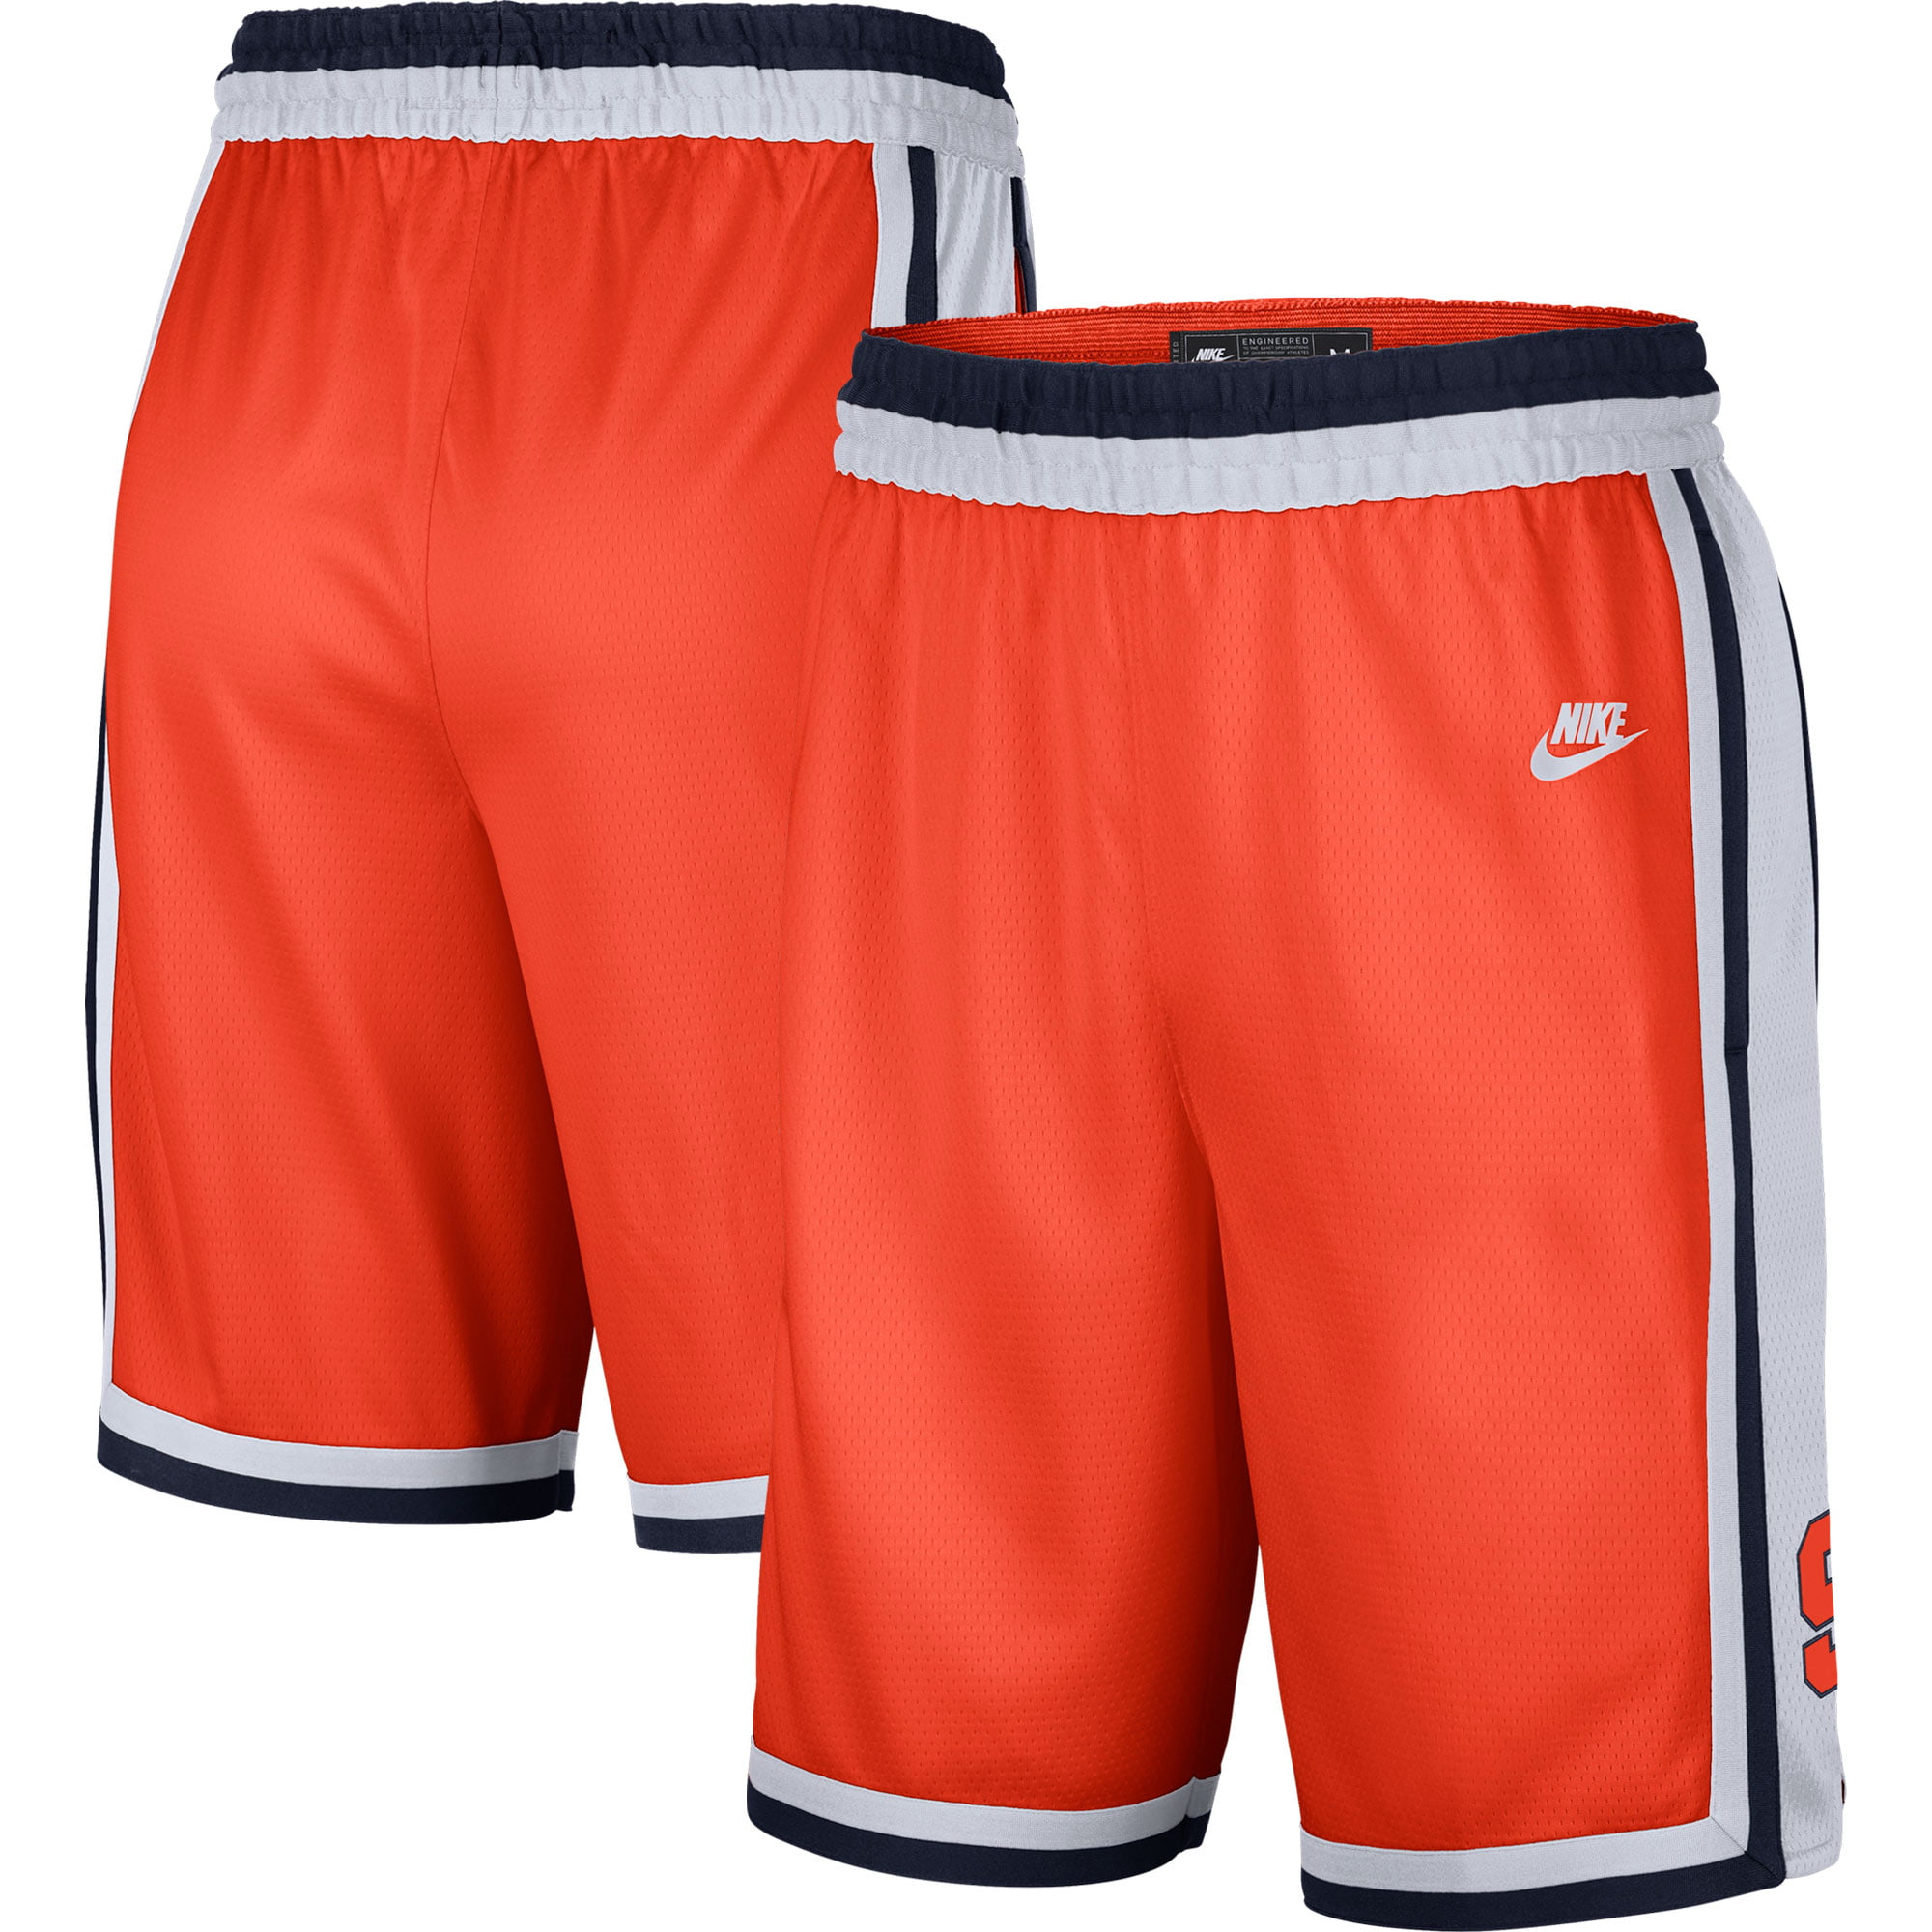 syracuse orange basketball shorts